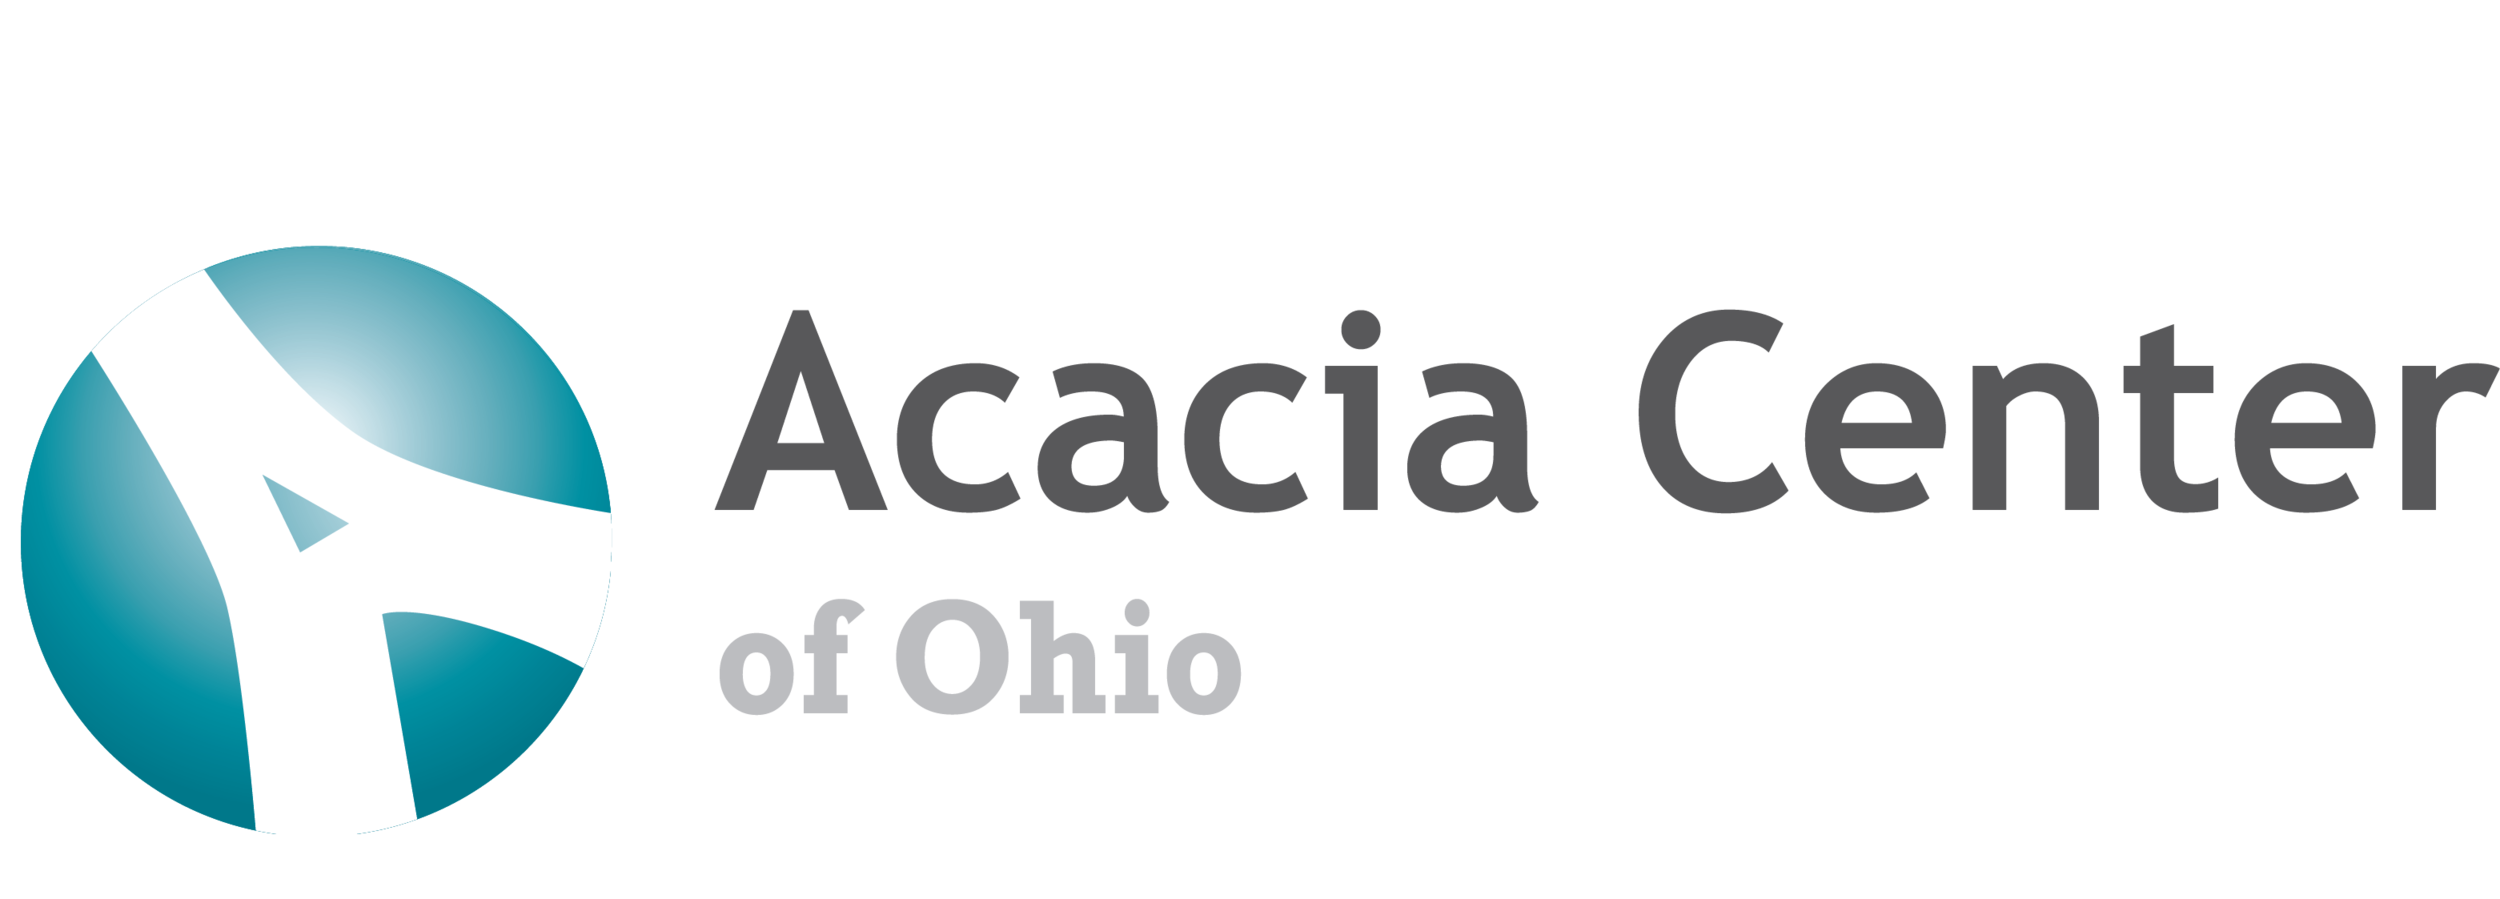 Acacia Center